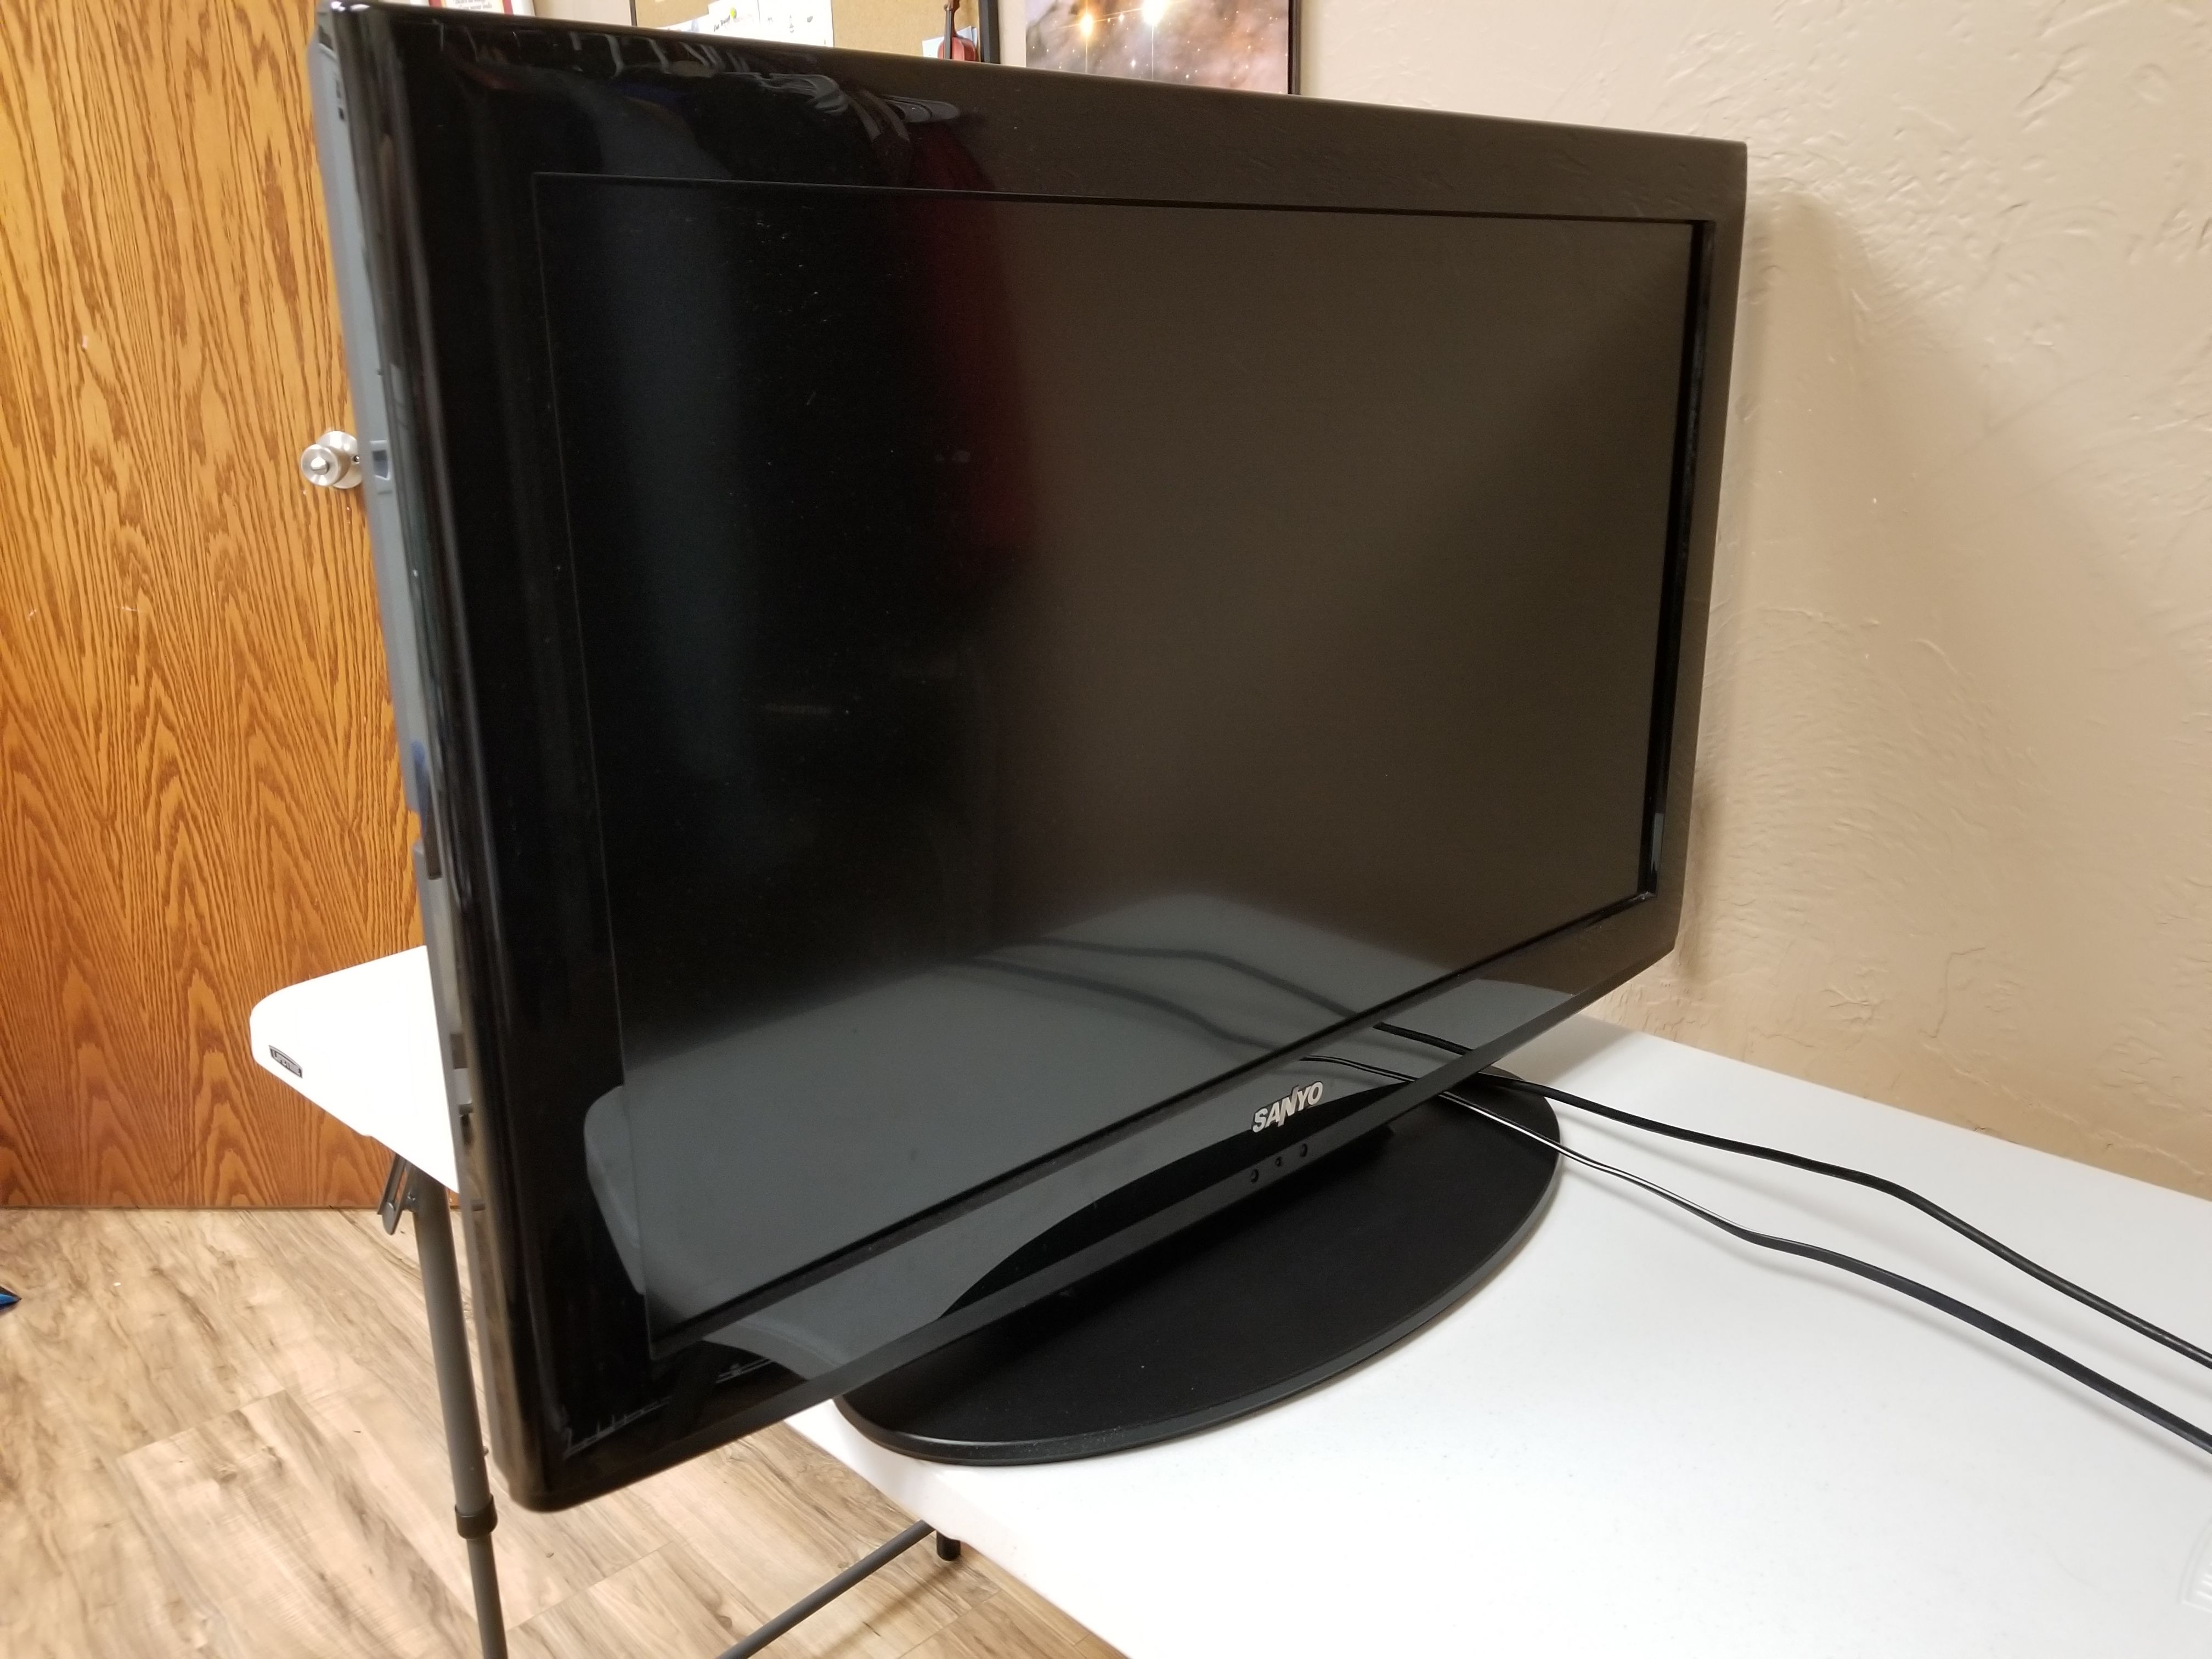 32 inch Sanyo TV